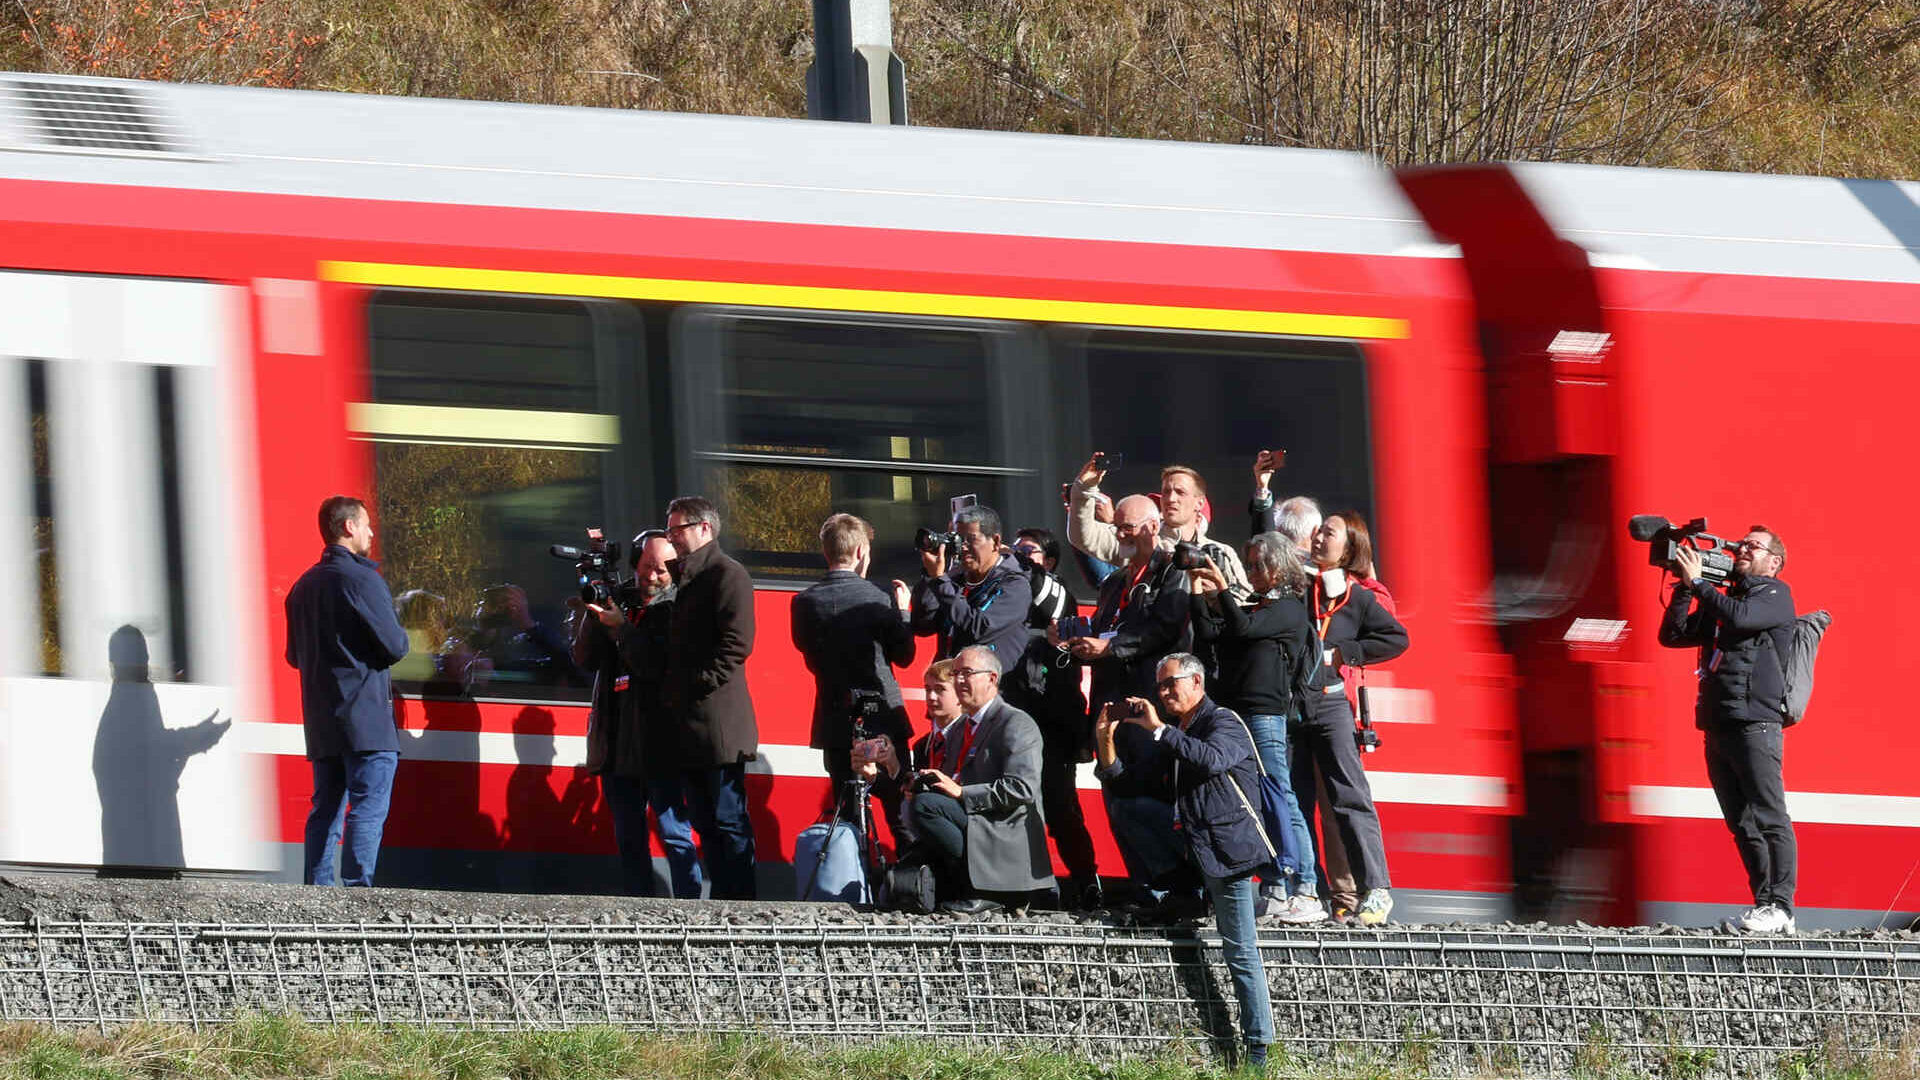 Pasaulē garākais šaursliežu vilciens Rheetian Railway Albula līnijā Šveicē 29. gada 2022. oktobrī (Foto: Endijs Metlers/Swiss-Image)